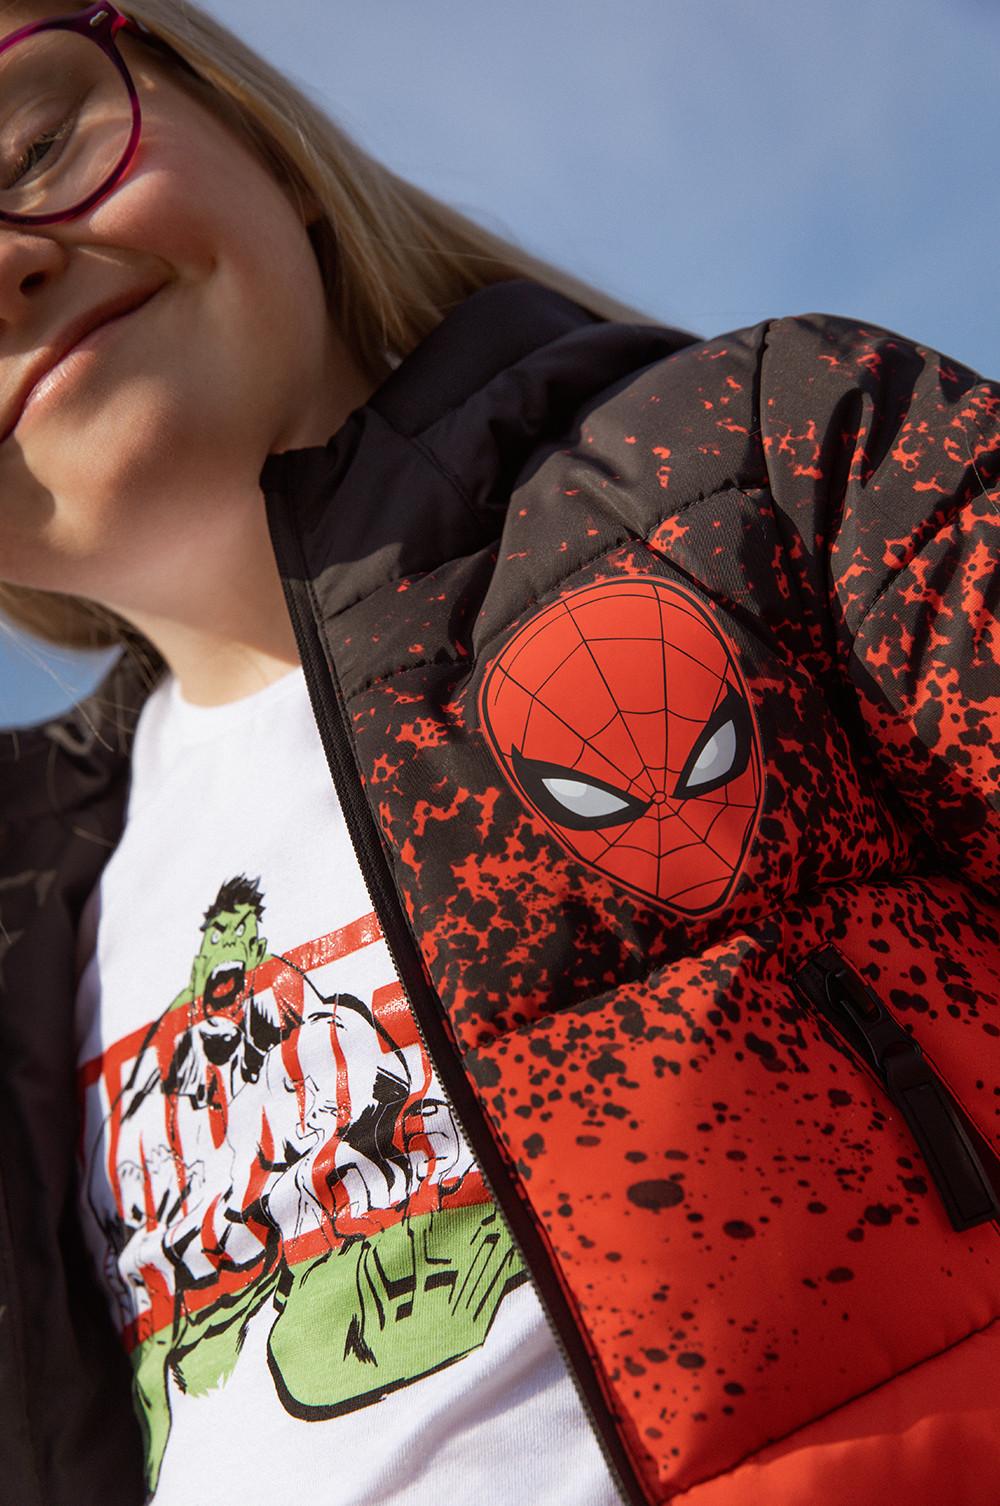 Marvel Spiderman - Conjunto de pijama azul y rojo para niños, camiseta y  pantalones cortos de Spiderman, diseño de telaraña